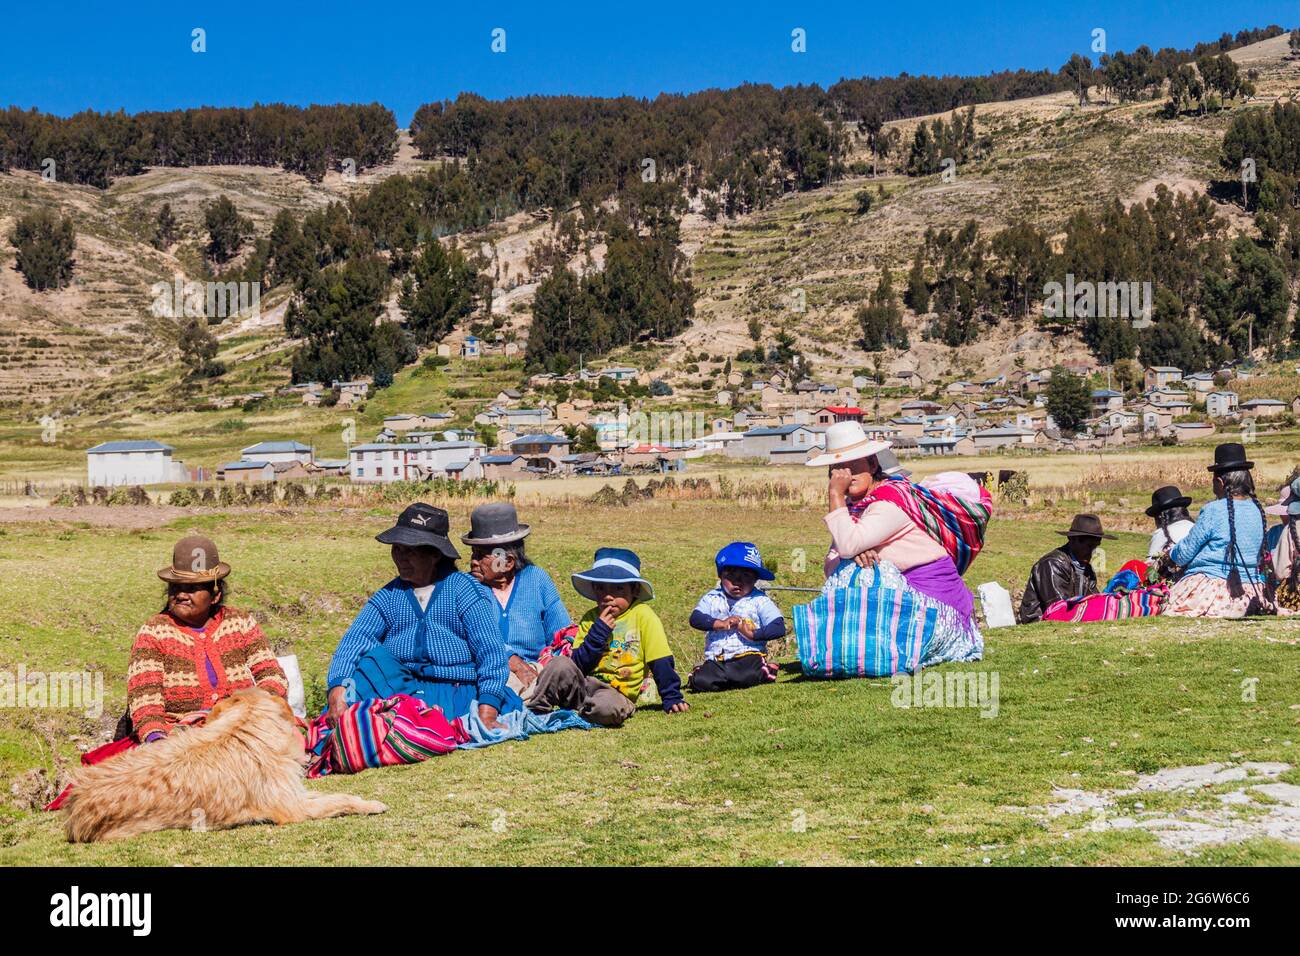 ISLA DEL SOL, BOLIVIEN - 12. MAI 2015: Einheimische einheimische Frauen im Dorf Challa auf der Isla del Sol (Sonneninsel) am Titicaca-See, Bolivien Stockfoto